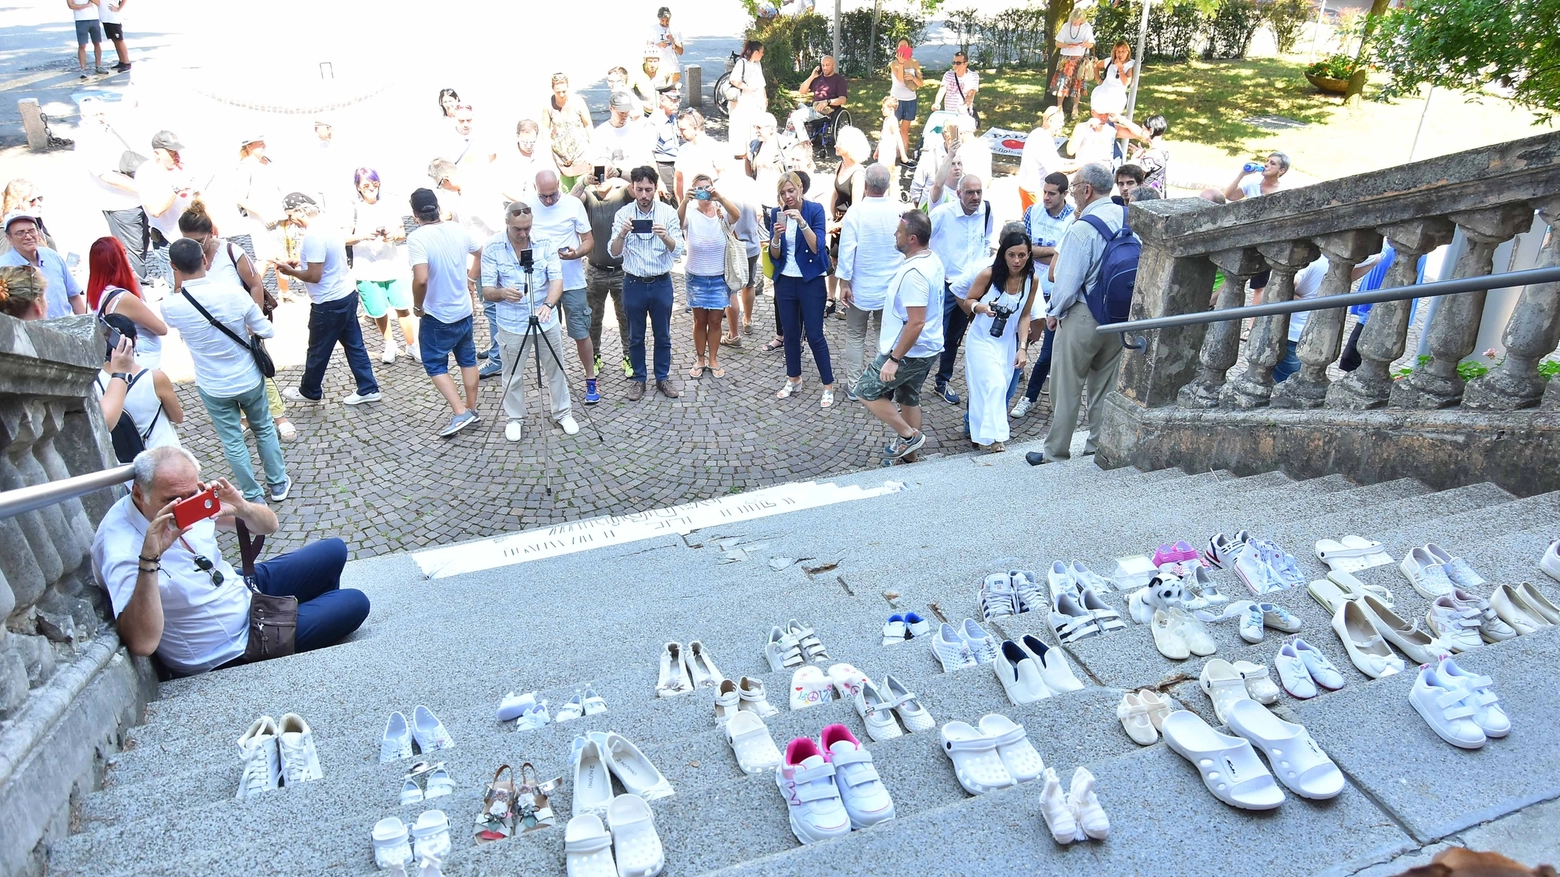 Scarpette bianche davanti al municipio di Bibbiano  per chiedere giustizia (foto Artioli)